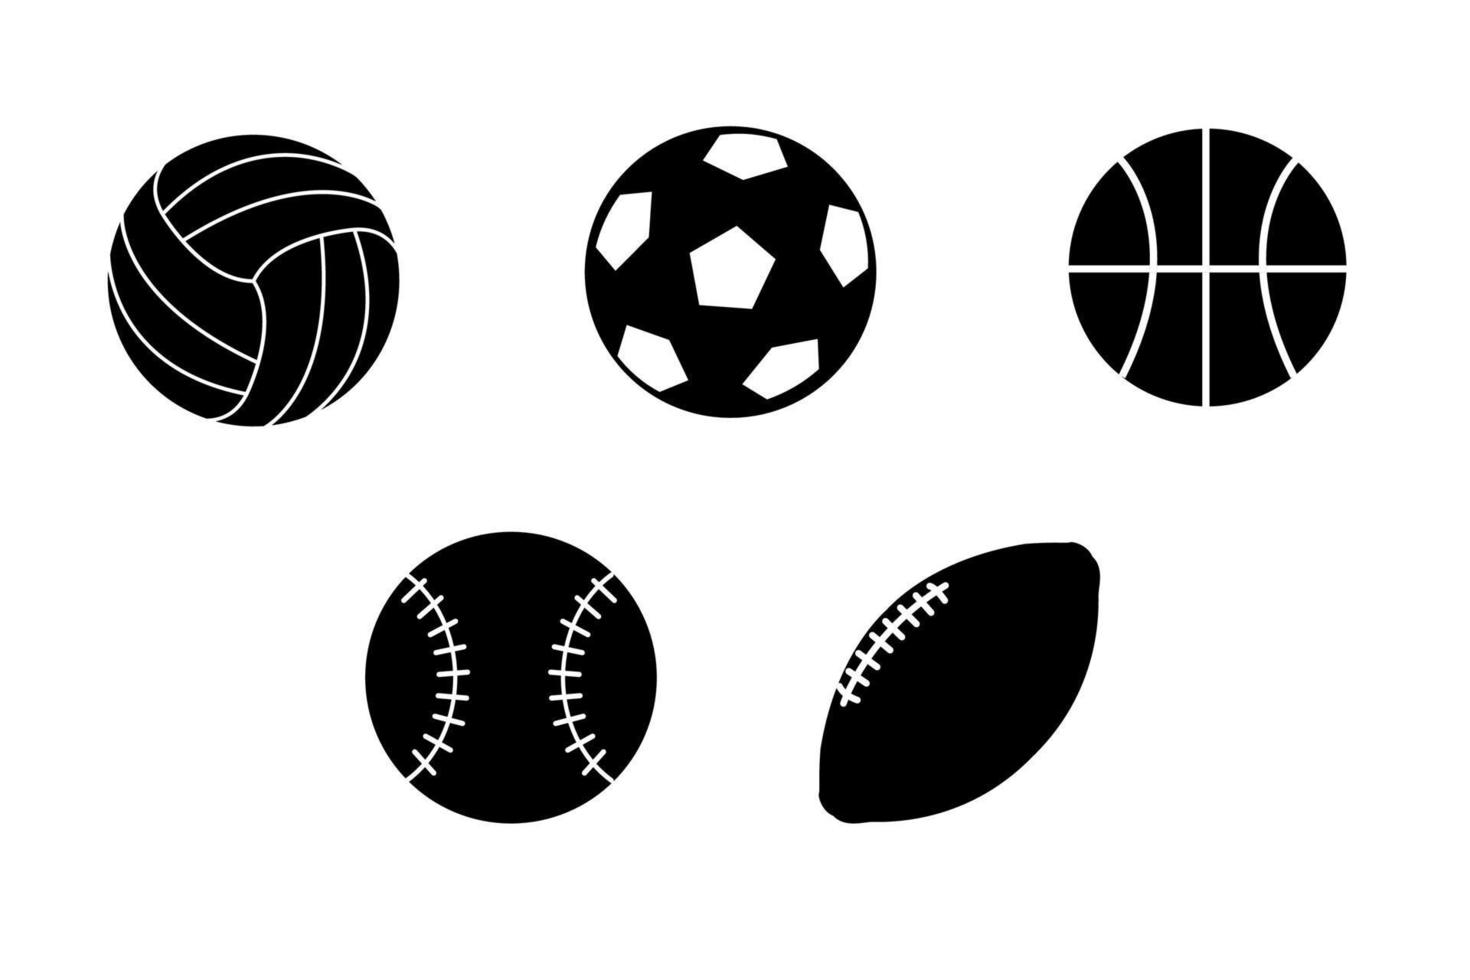 en uppsättning av vektor sporter boll ikoner. svart bollar för fotboll, volleyboll, tennis, basketboll, rugby. boll ikoner isolerat på en vit bakgrund.